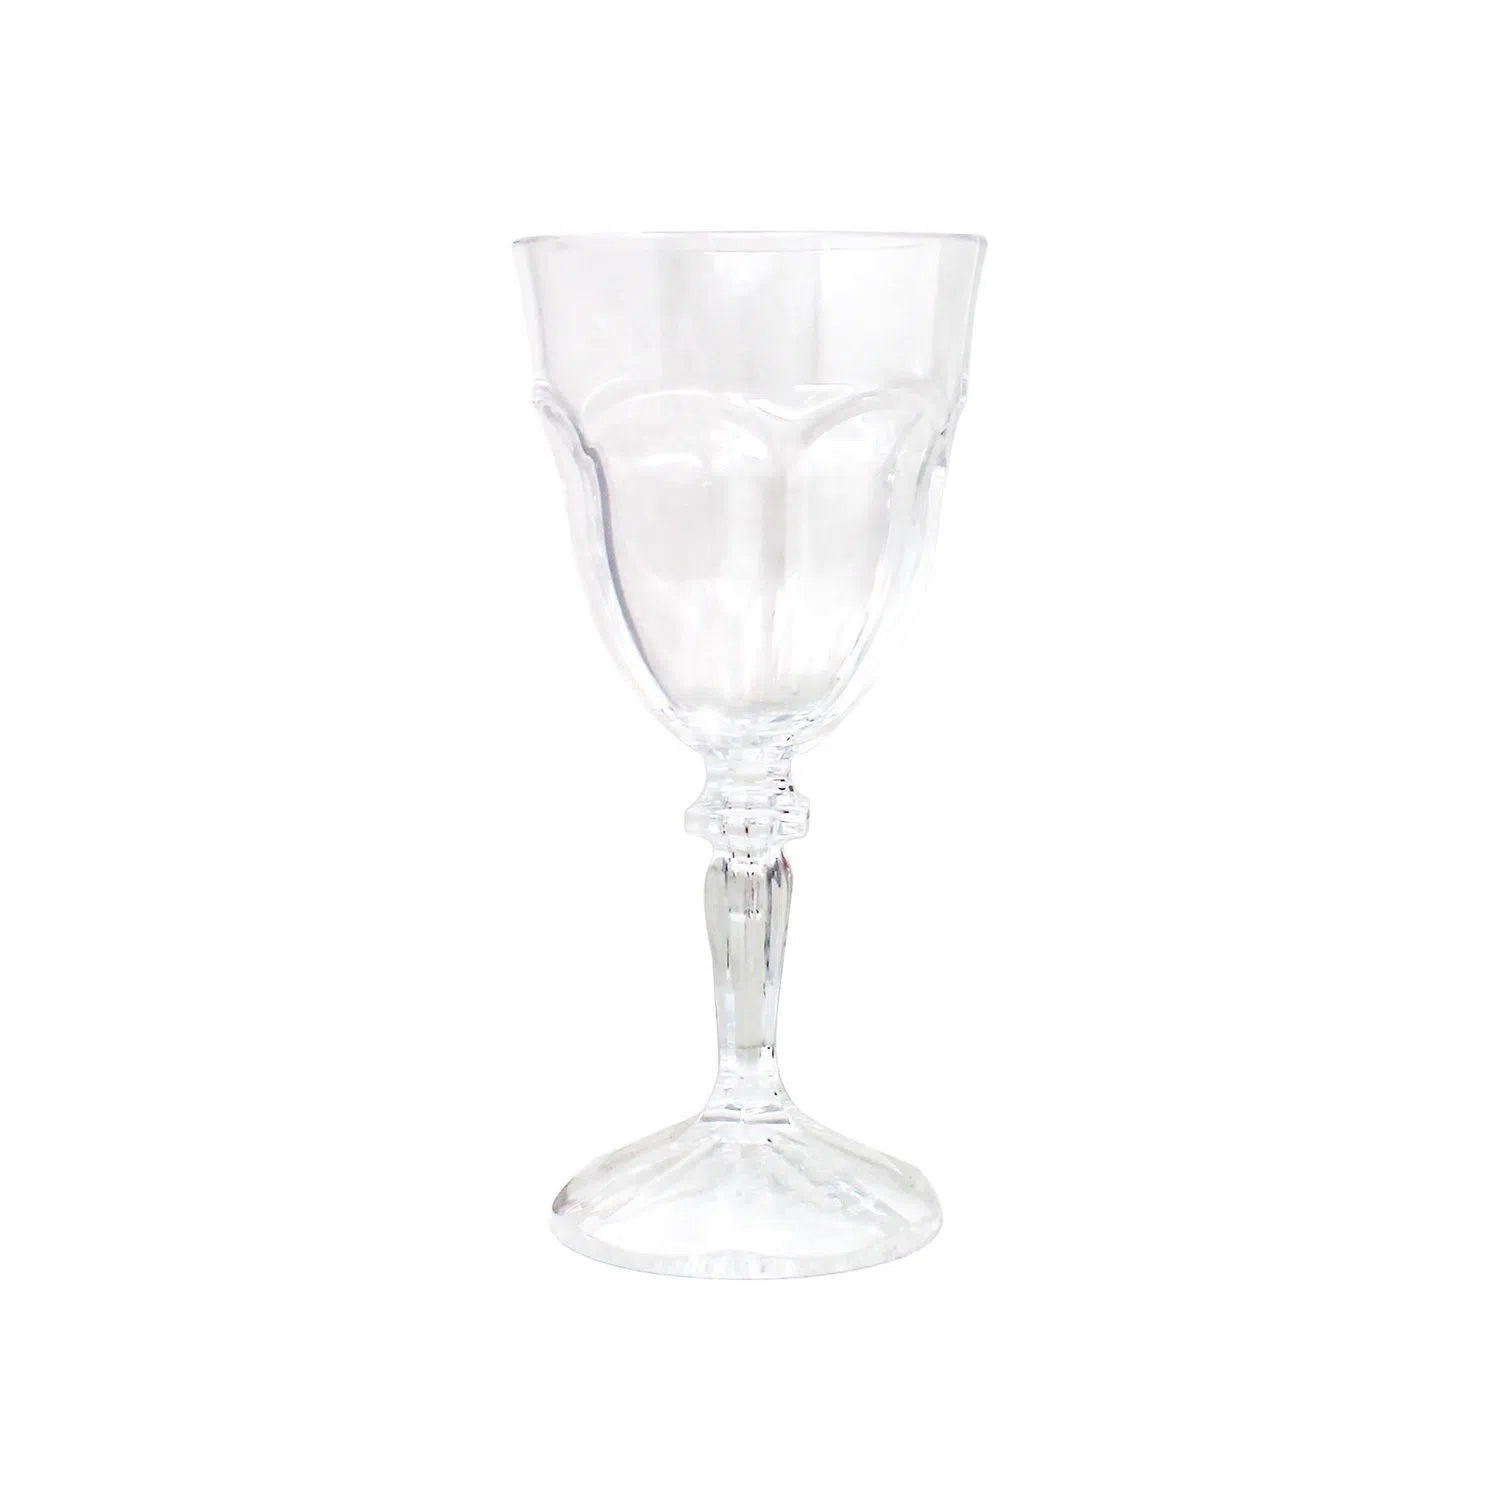 Le Cadeaux Shatter-Resistant Fleur Wine Glasses in Blue, Set of 6